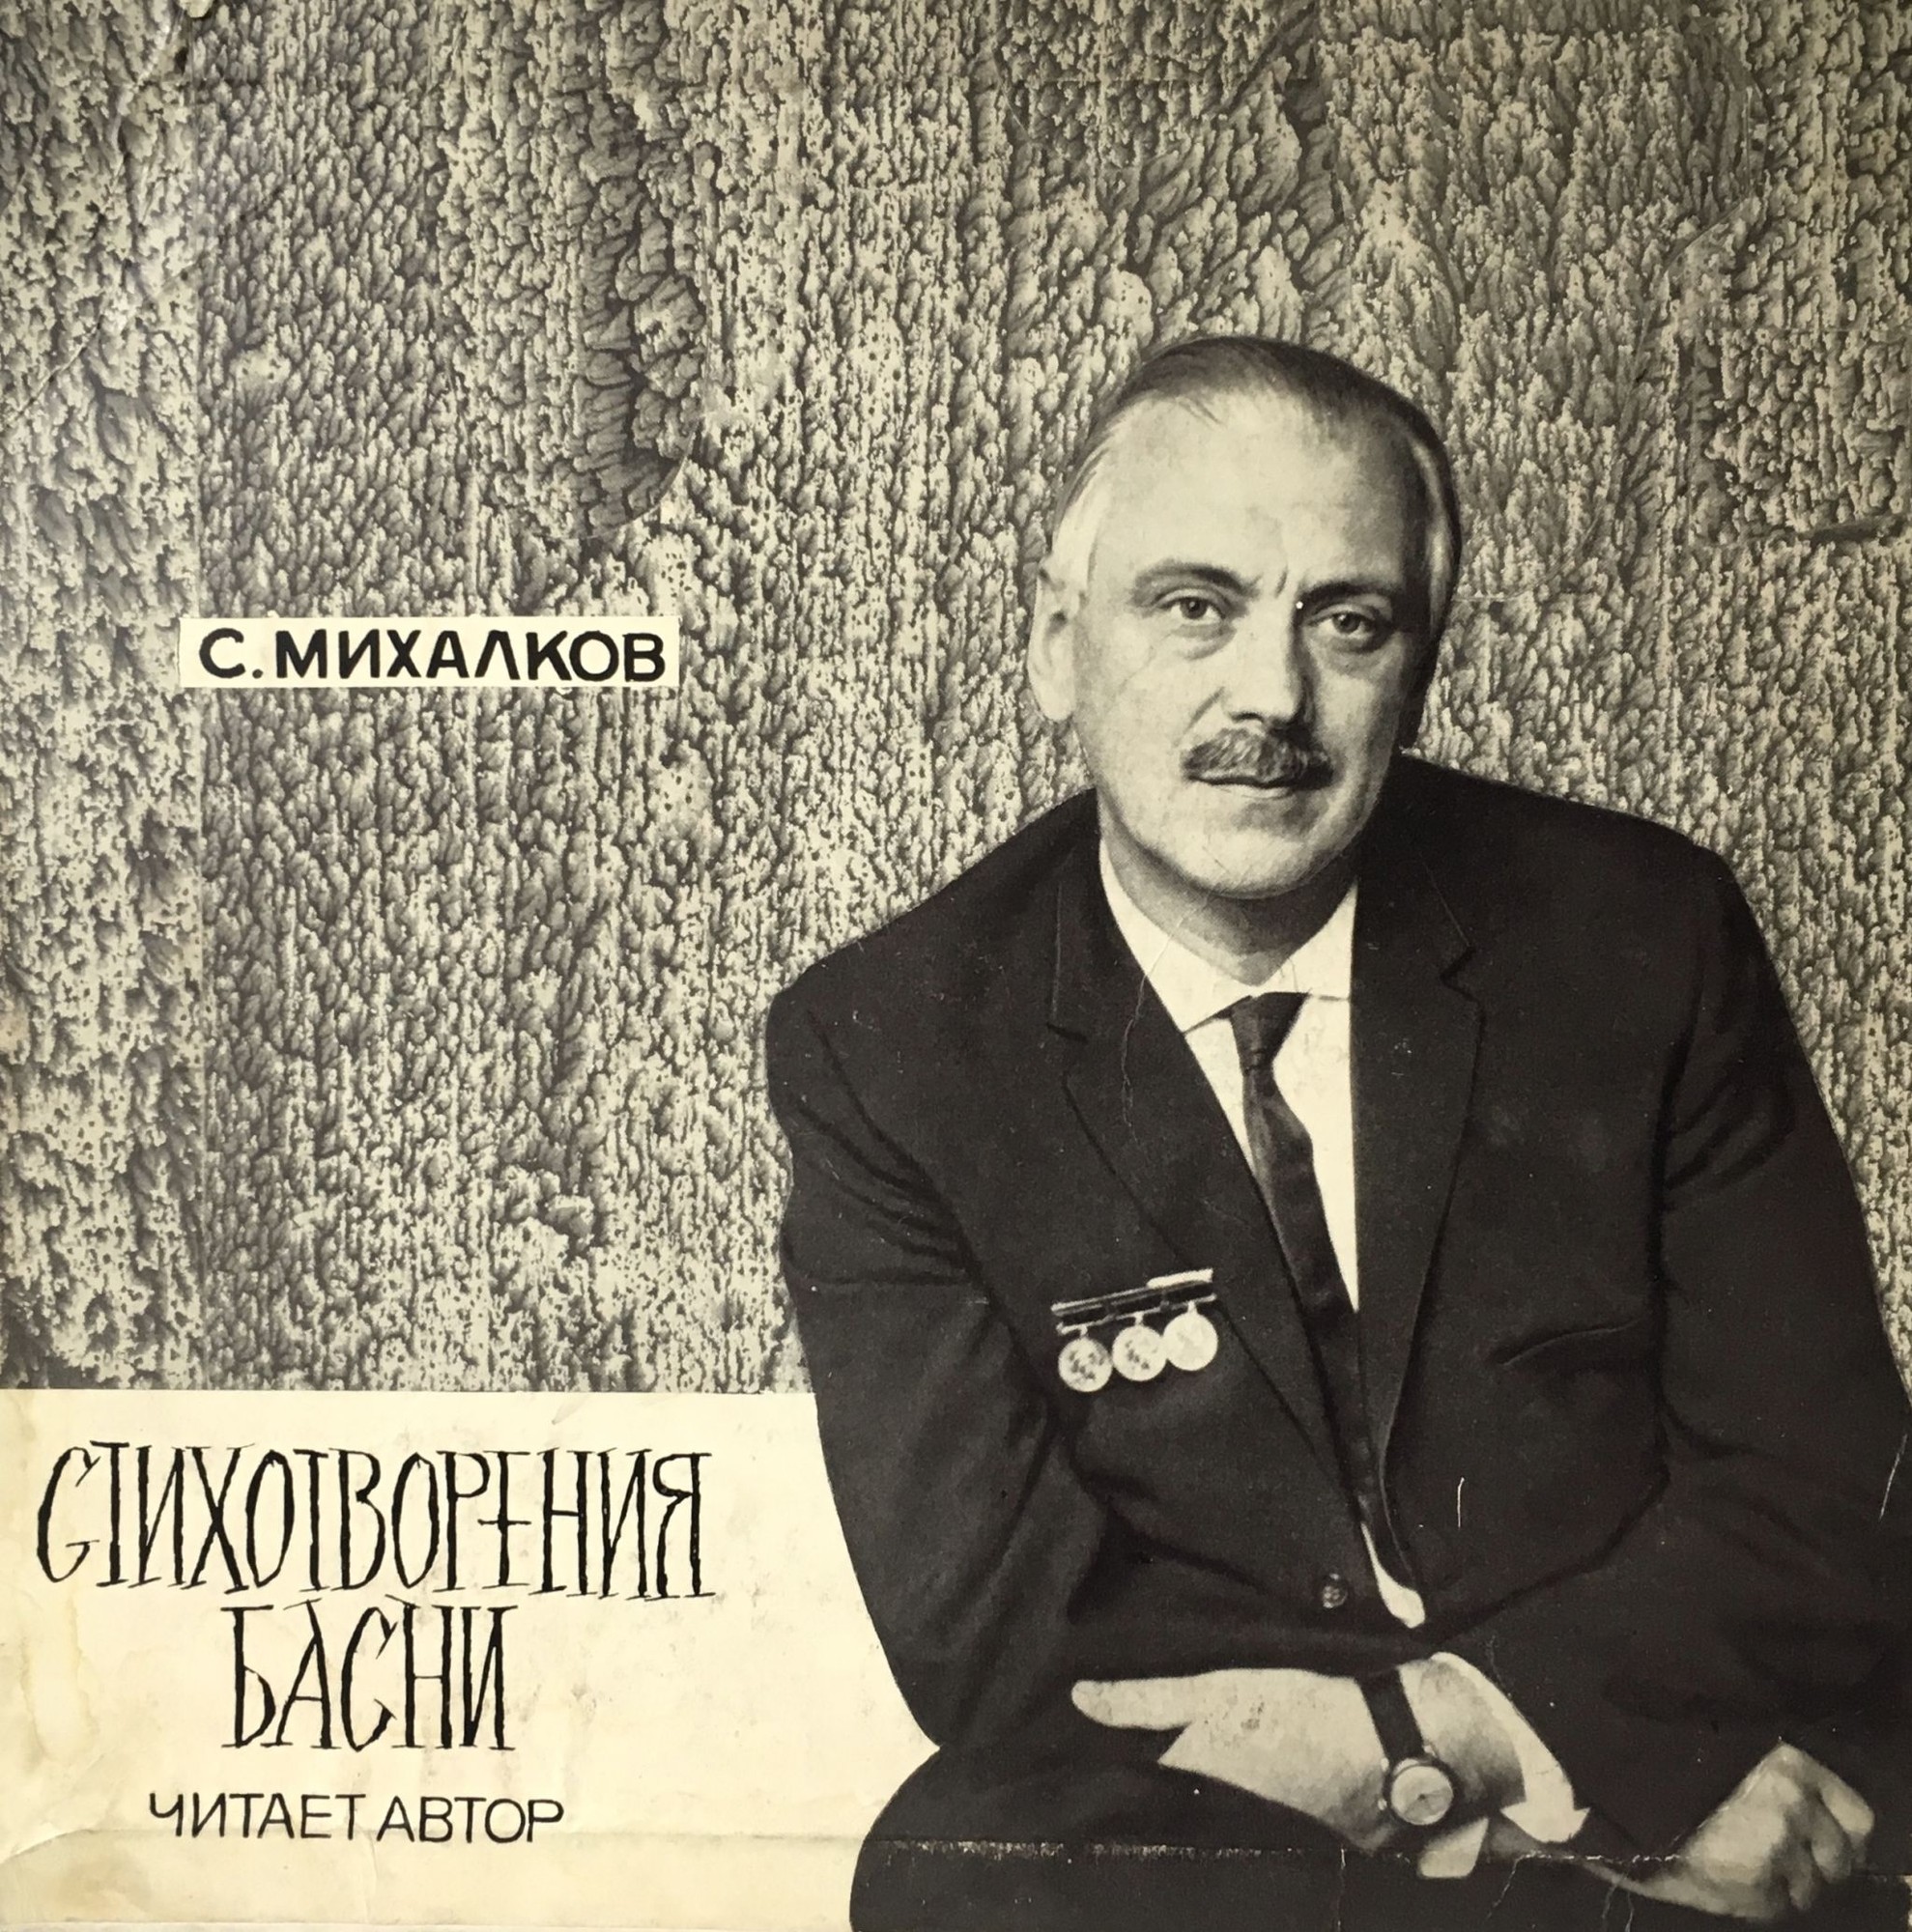 Сергей МИХАЛКОВ. Басни и стихотворения. Читает автор